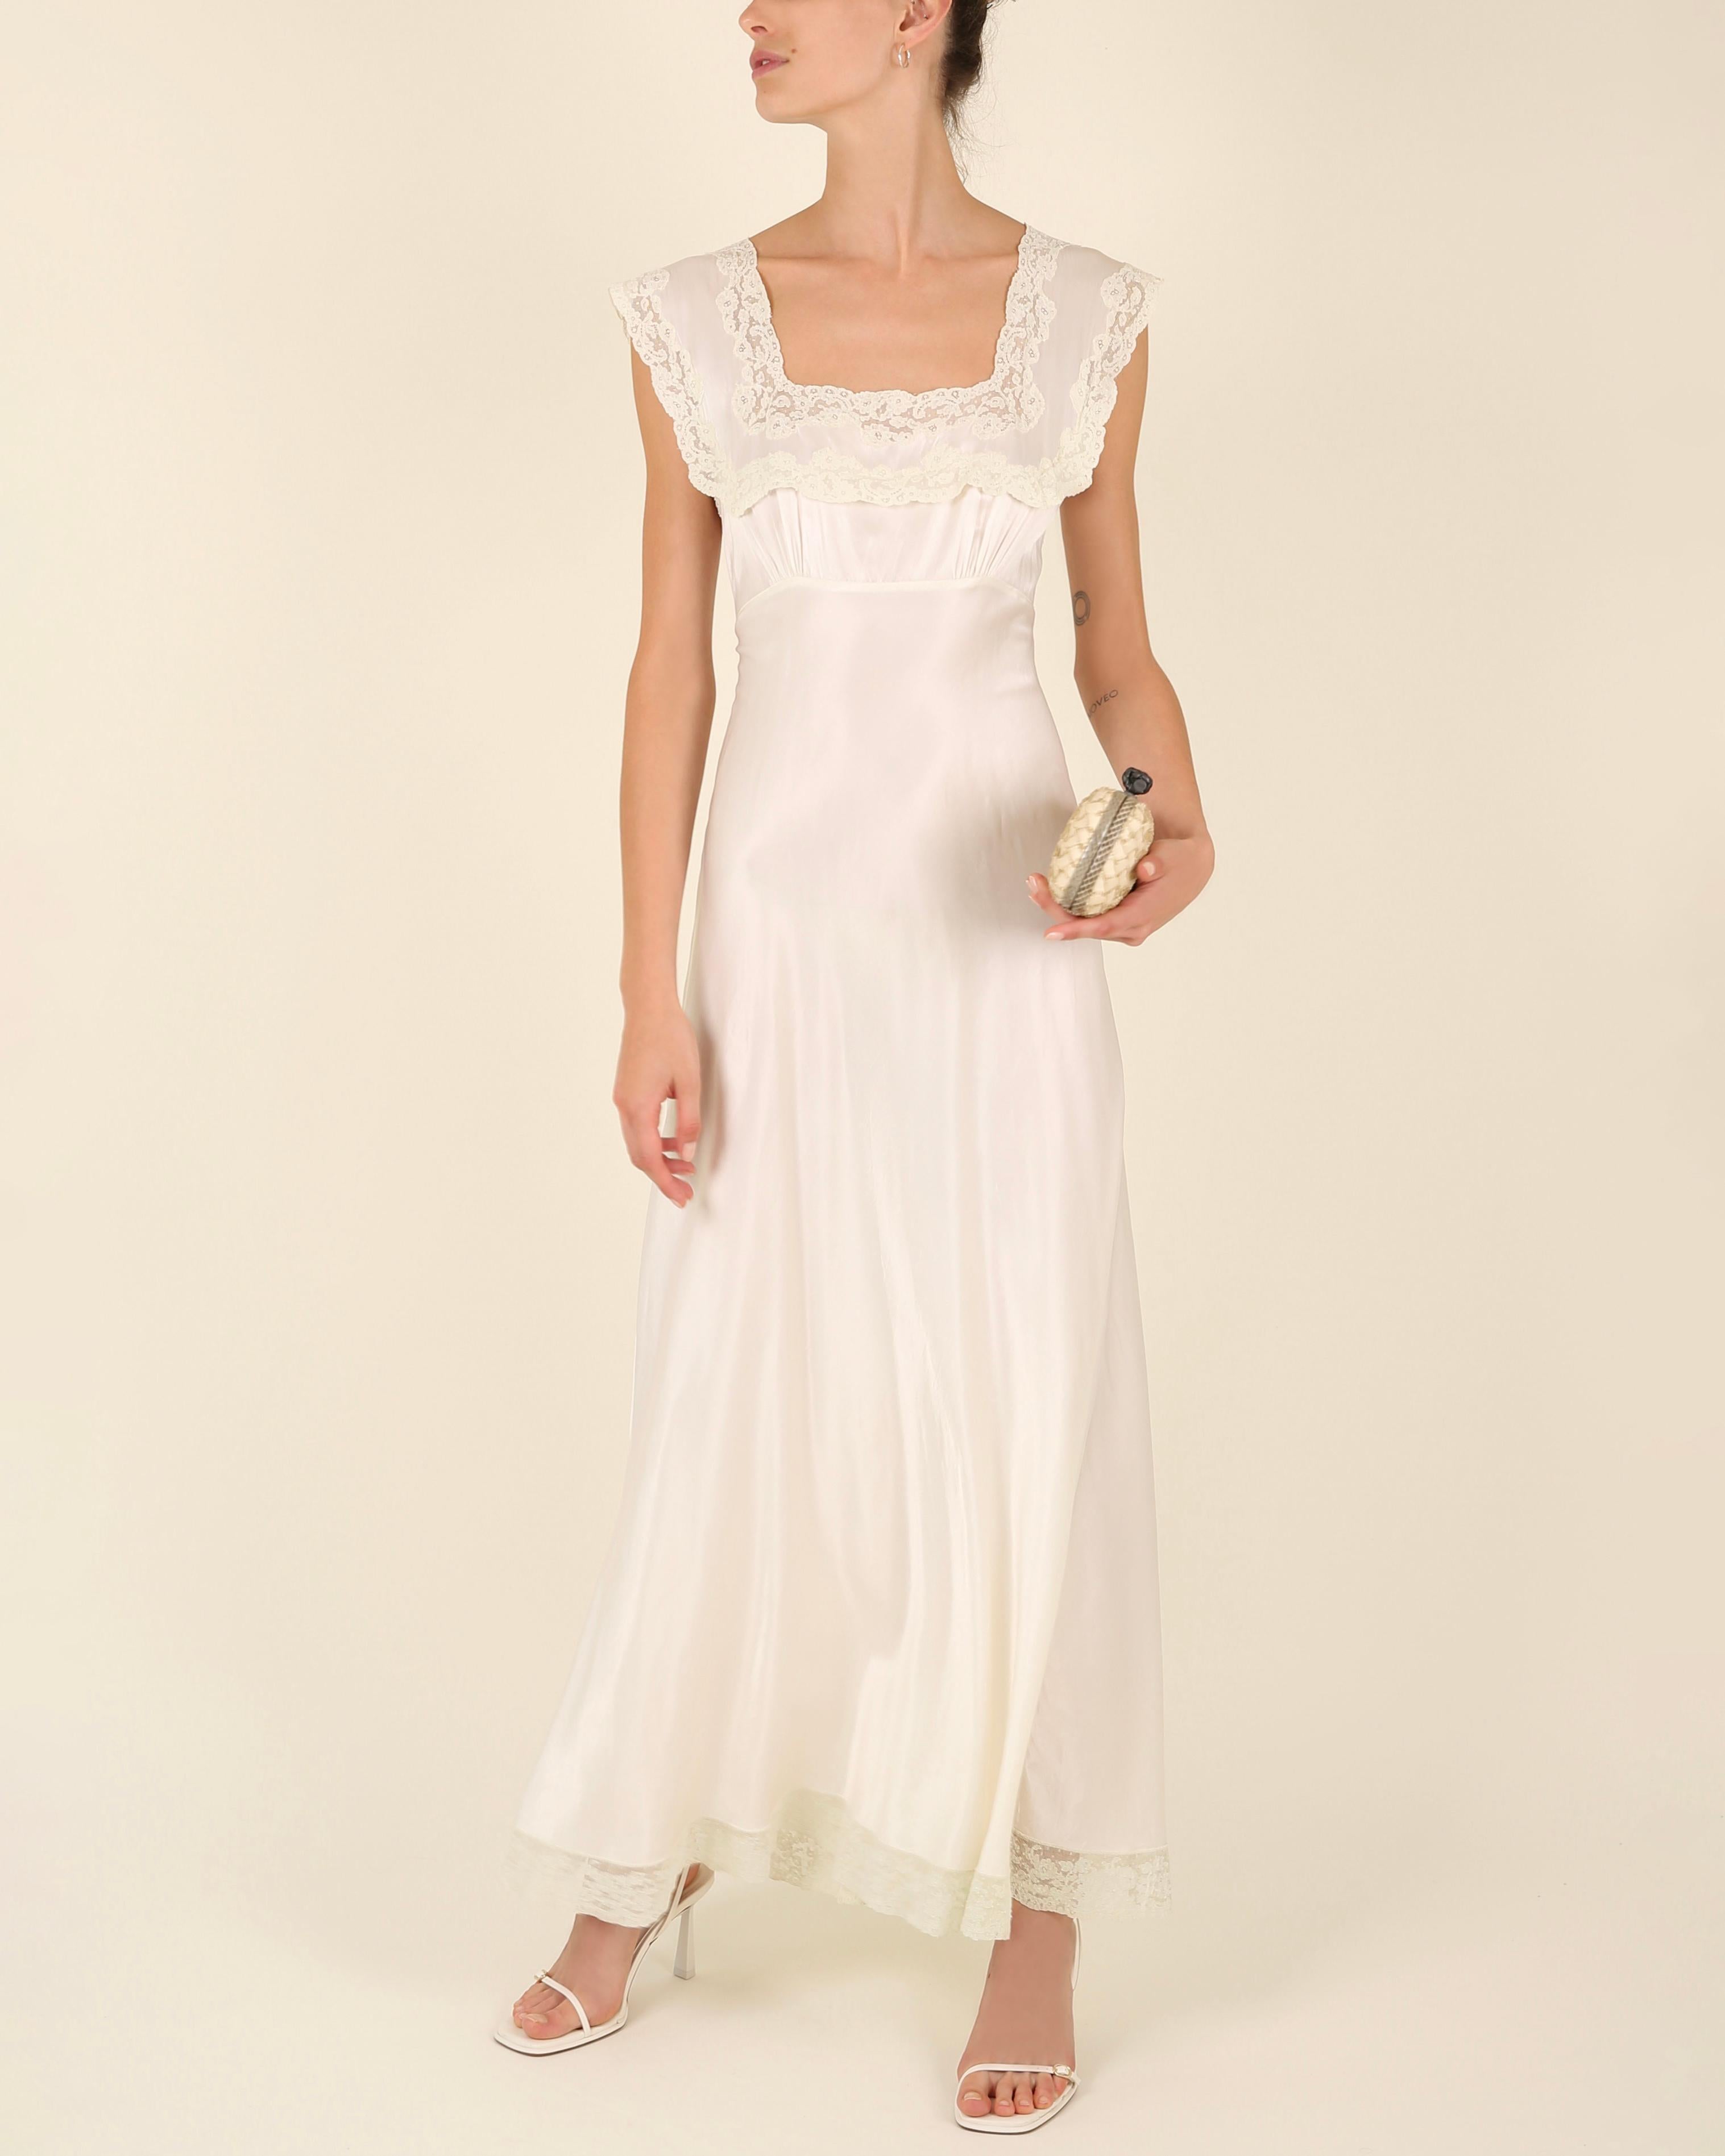 Women's Heavenly Fischer vintage 40s silk white ivory lace wedding night gown slip dress